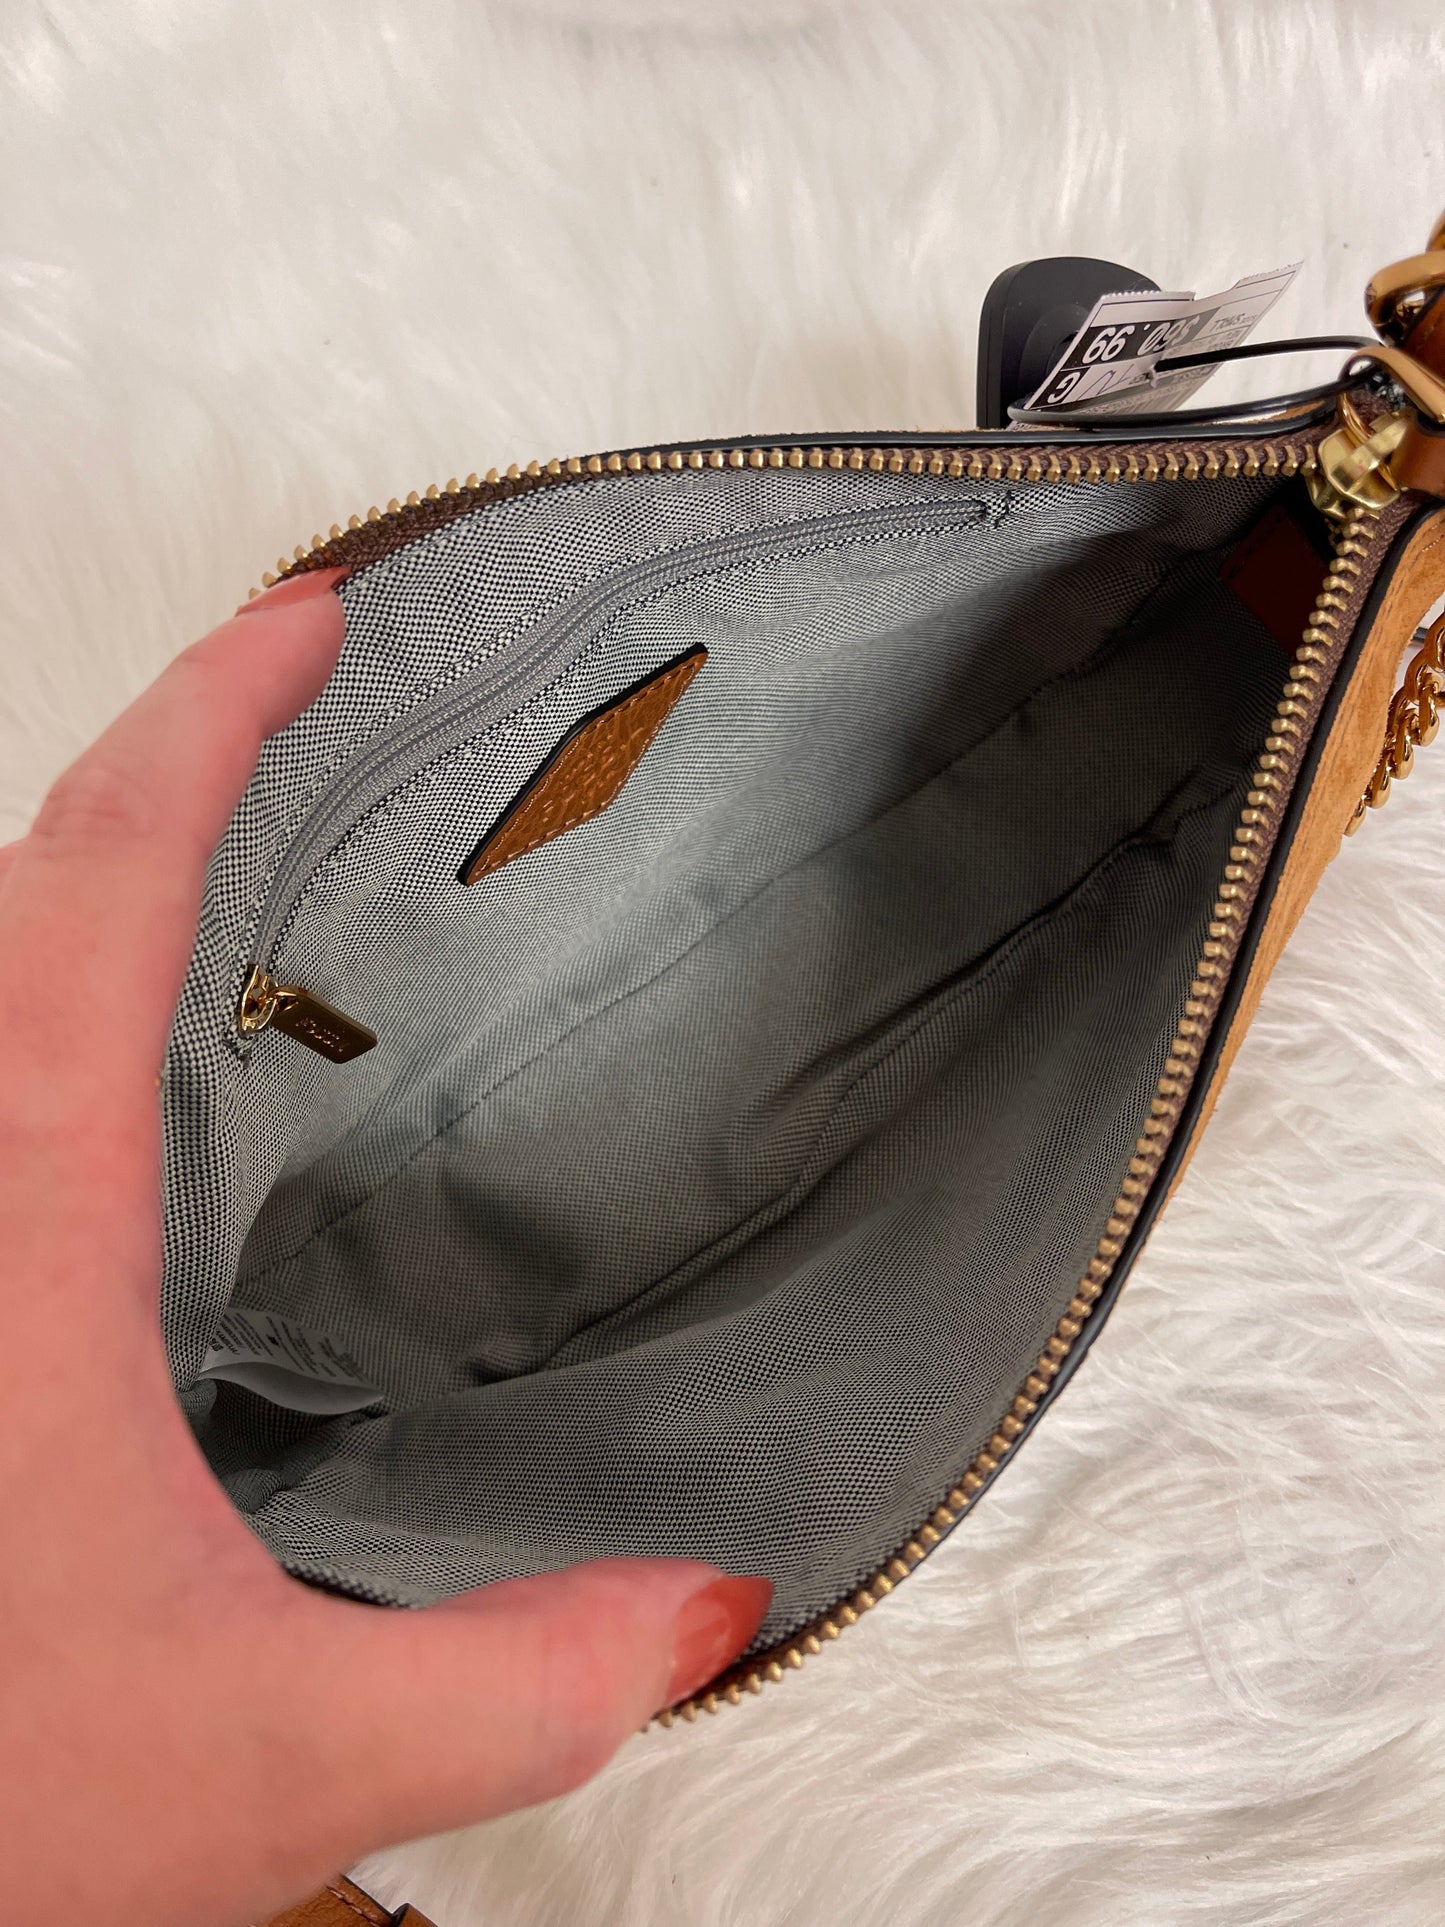 Handbag Designer Fossil, Size Small